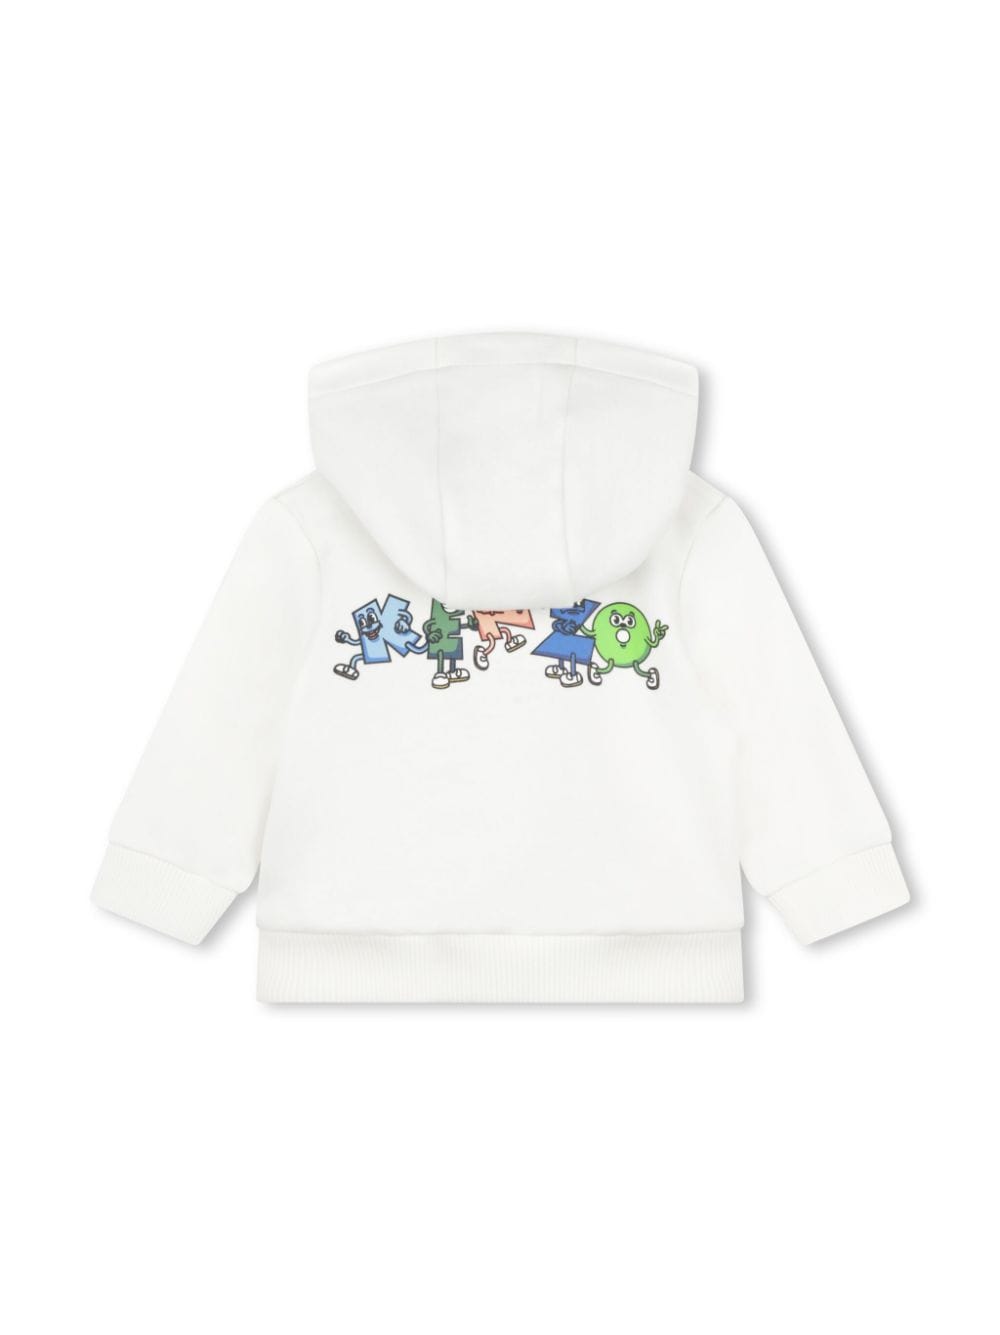 White sweatshirt for newborns with logo